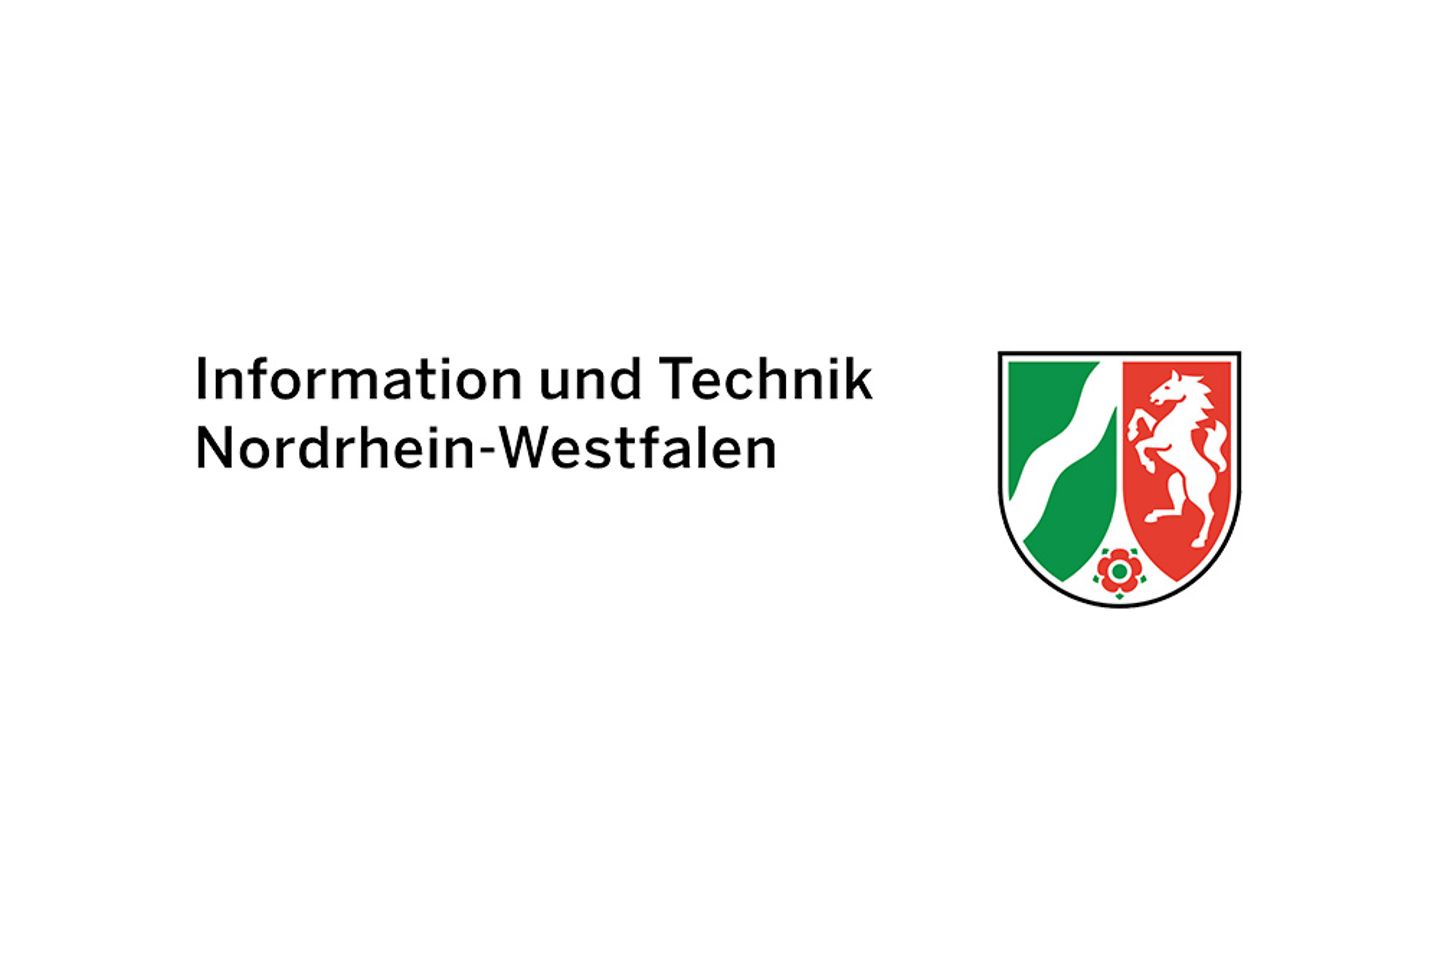 Information und Technik NRW logo